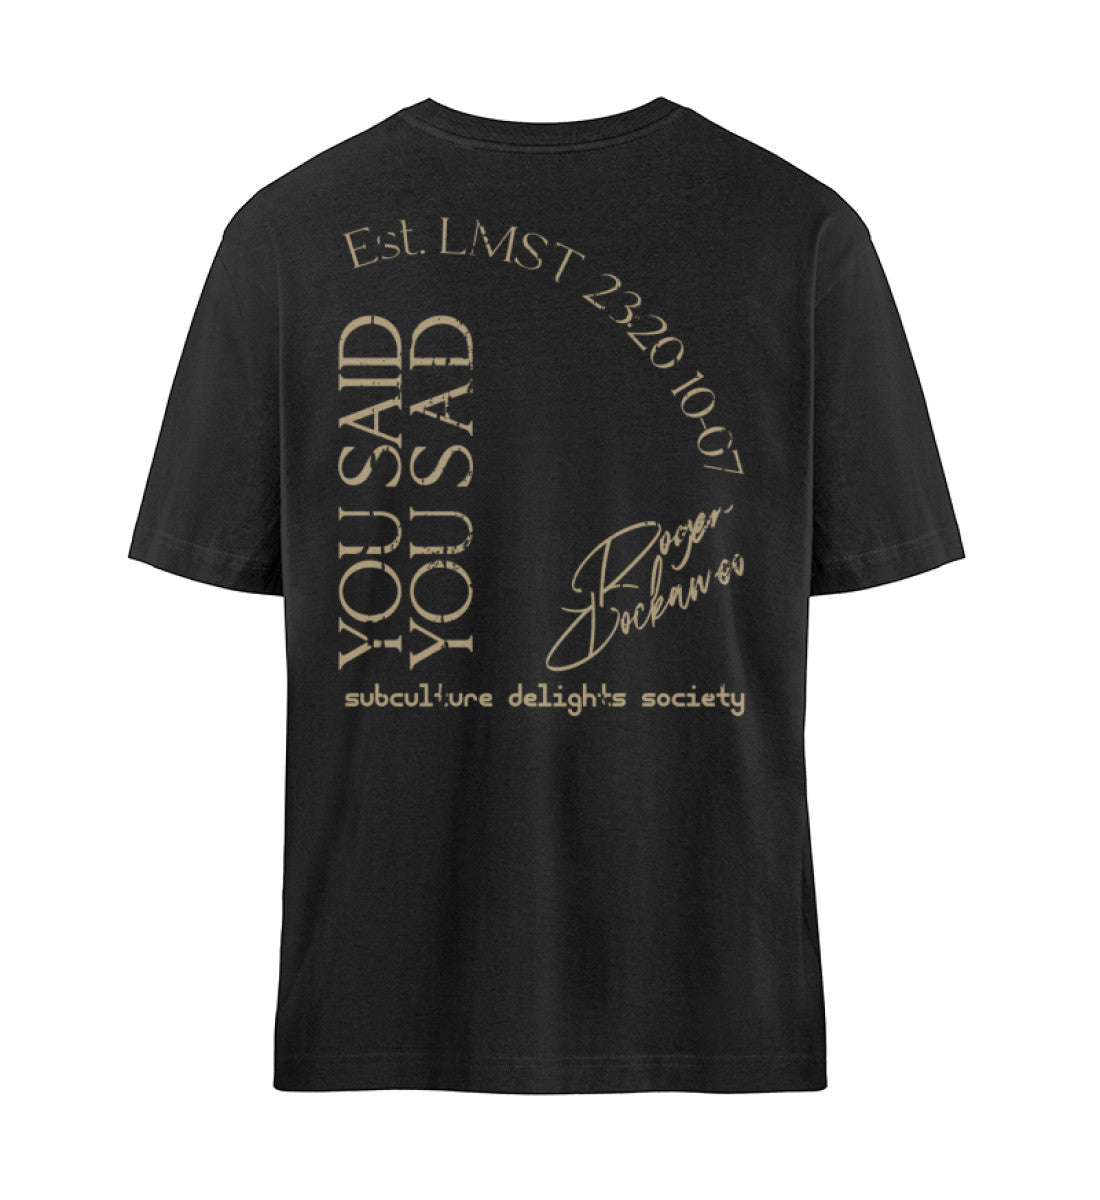 Schwarzes T-Shirt Unisex Relaxed Fit für Frauen und Männer bedruckt mit dem Design der Roger Rockawoo Clothing Kollektion you said you sad